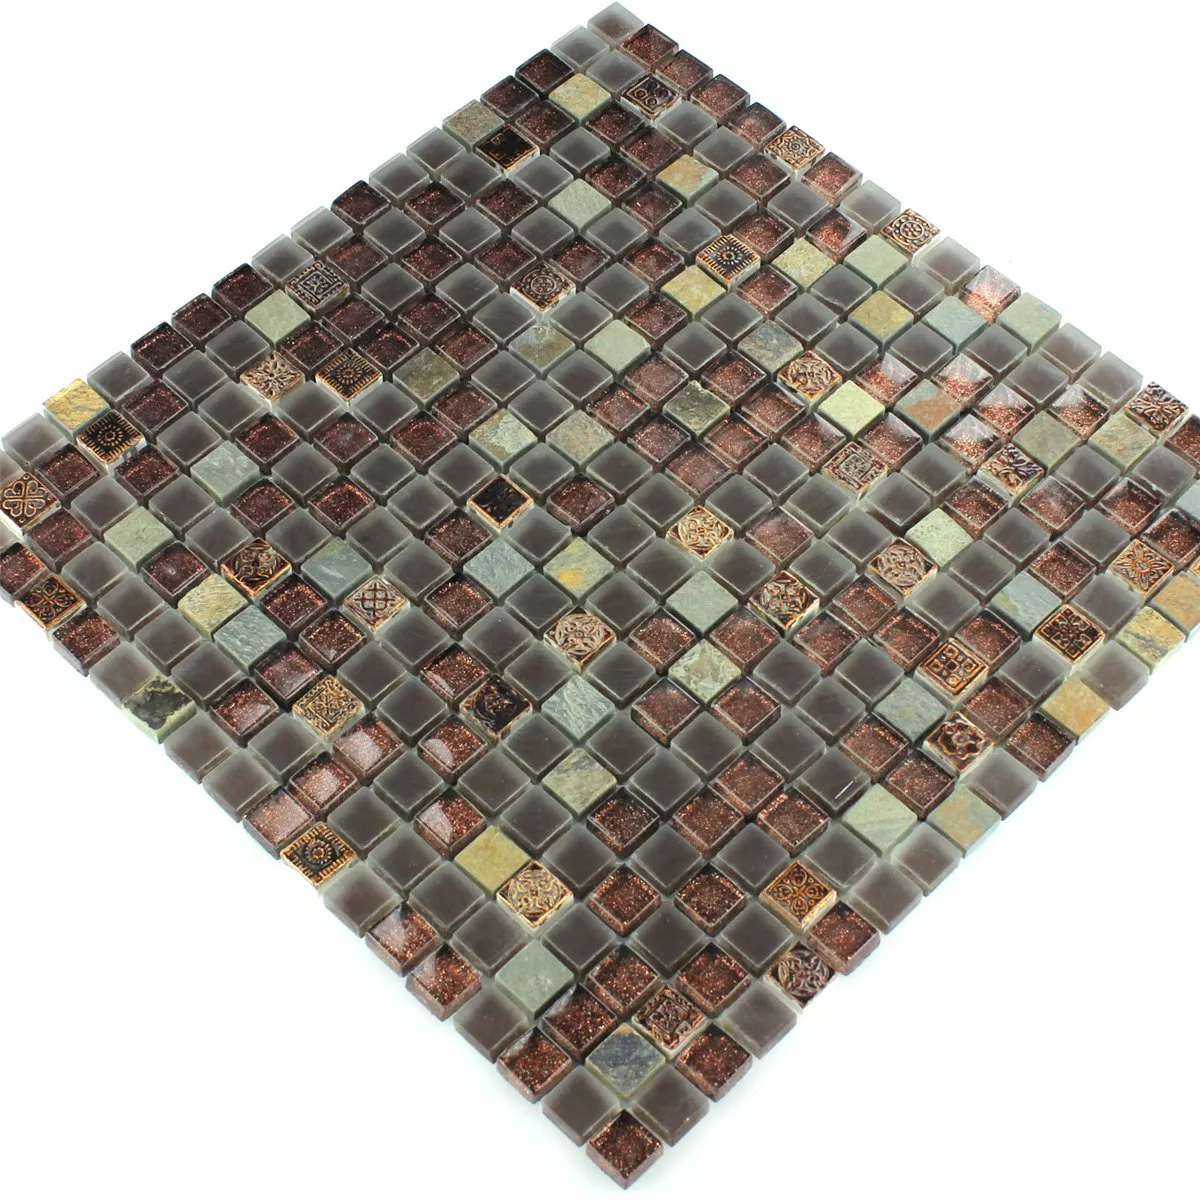 Glas Kalkstein Quarzit Mosaik Fliesen Glitzer 15x15x8mm